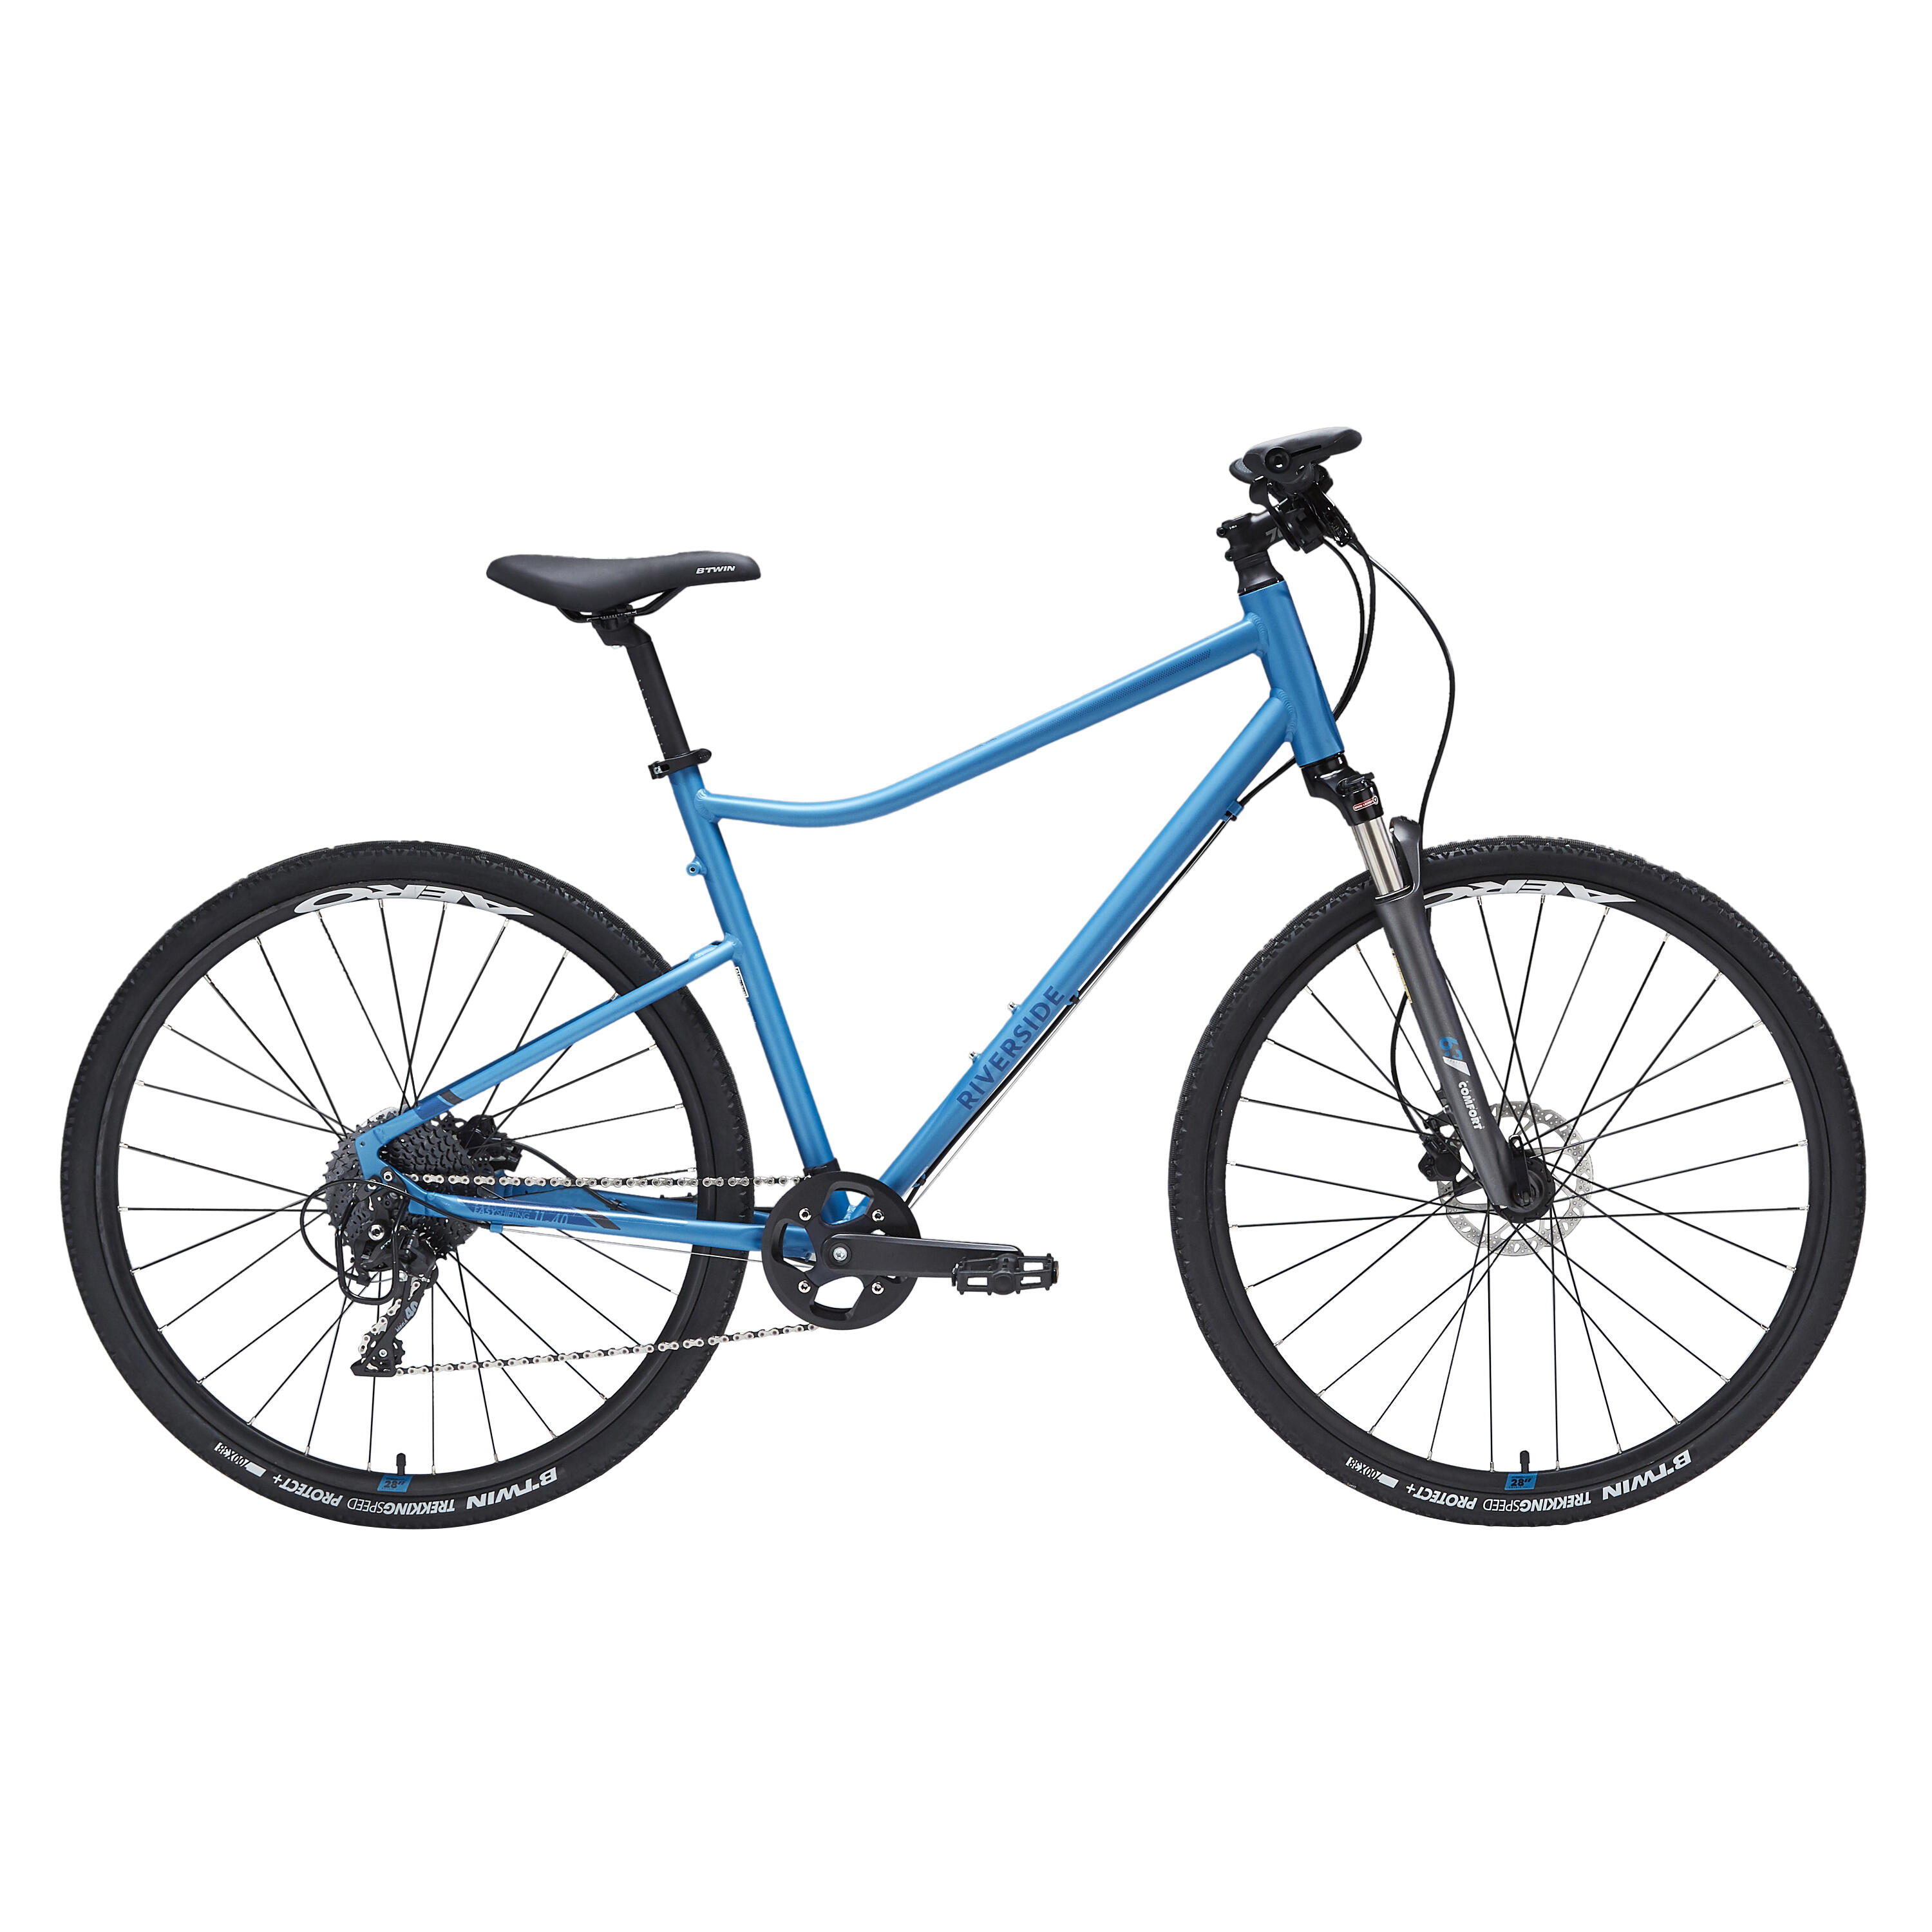 Bicicletă polivalentă Riverside 900 Albastru La Oferta Online decathlon imagine La Oferta Online